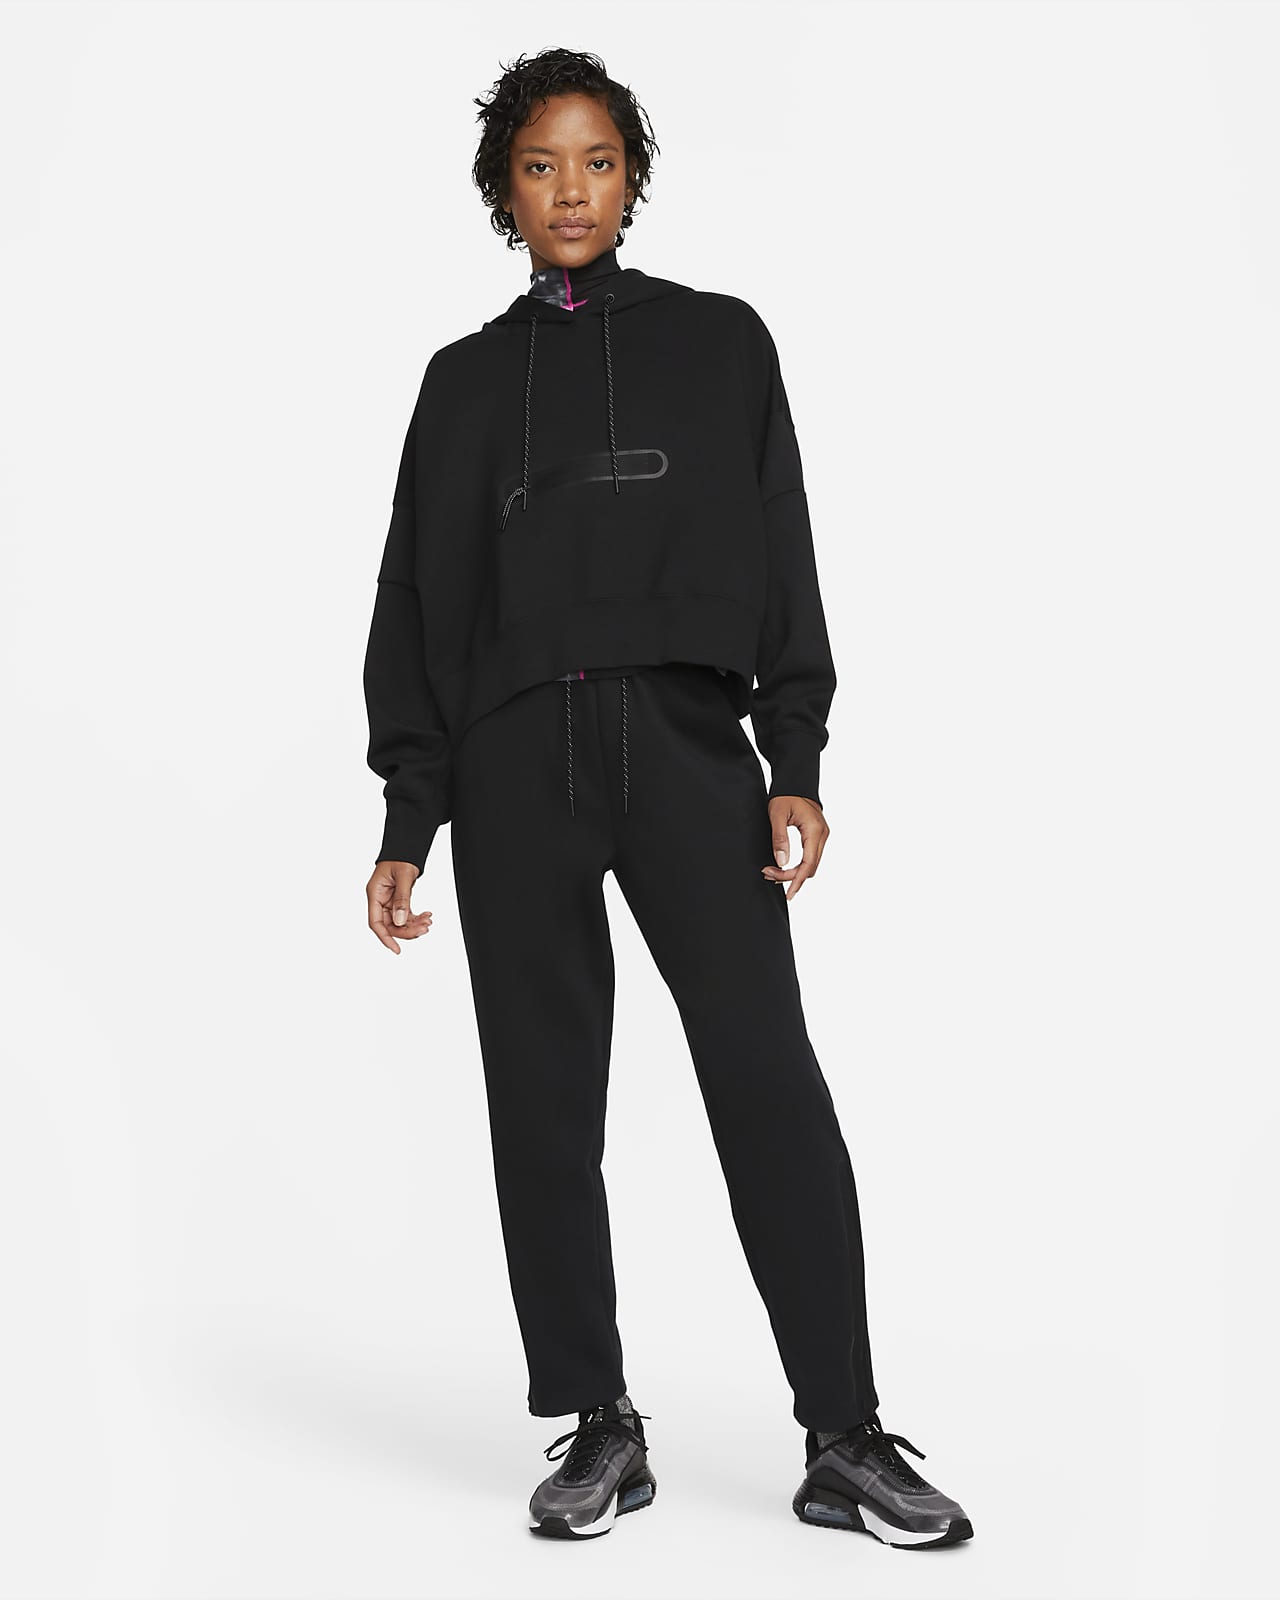 Seguro Majestuoso jurar Nike Sportswear Tech Fleece Women's Over-Oversized Crop Pullover Hoodie.  Nike LU